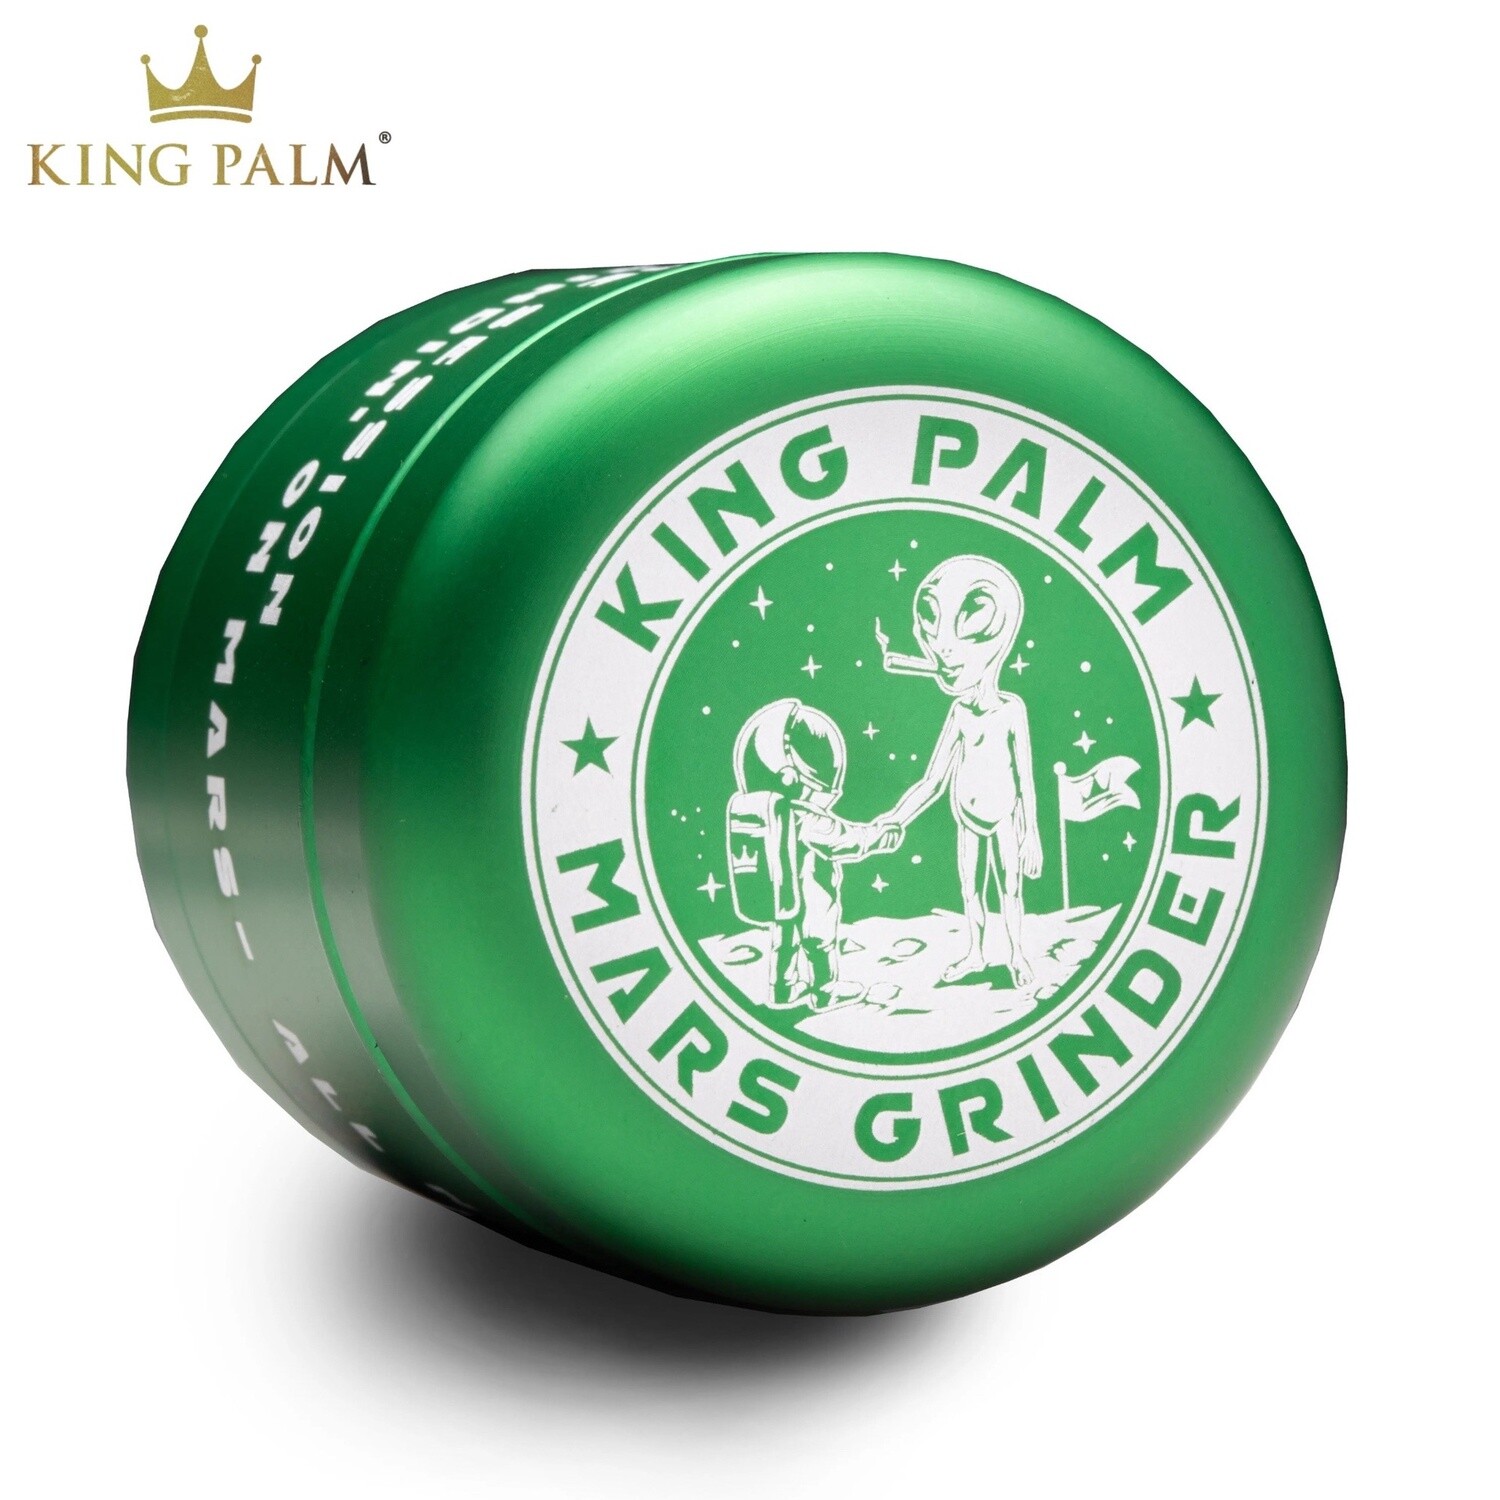 King Palm® Mars Grinder (Green)